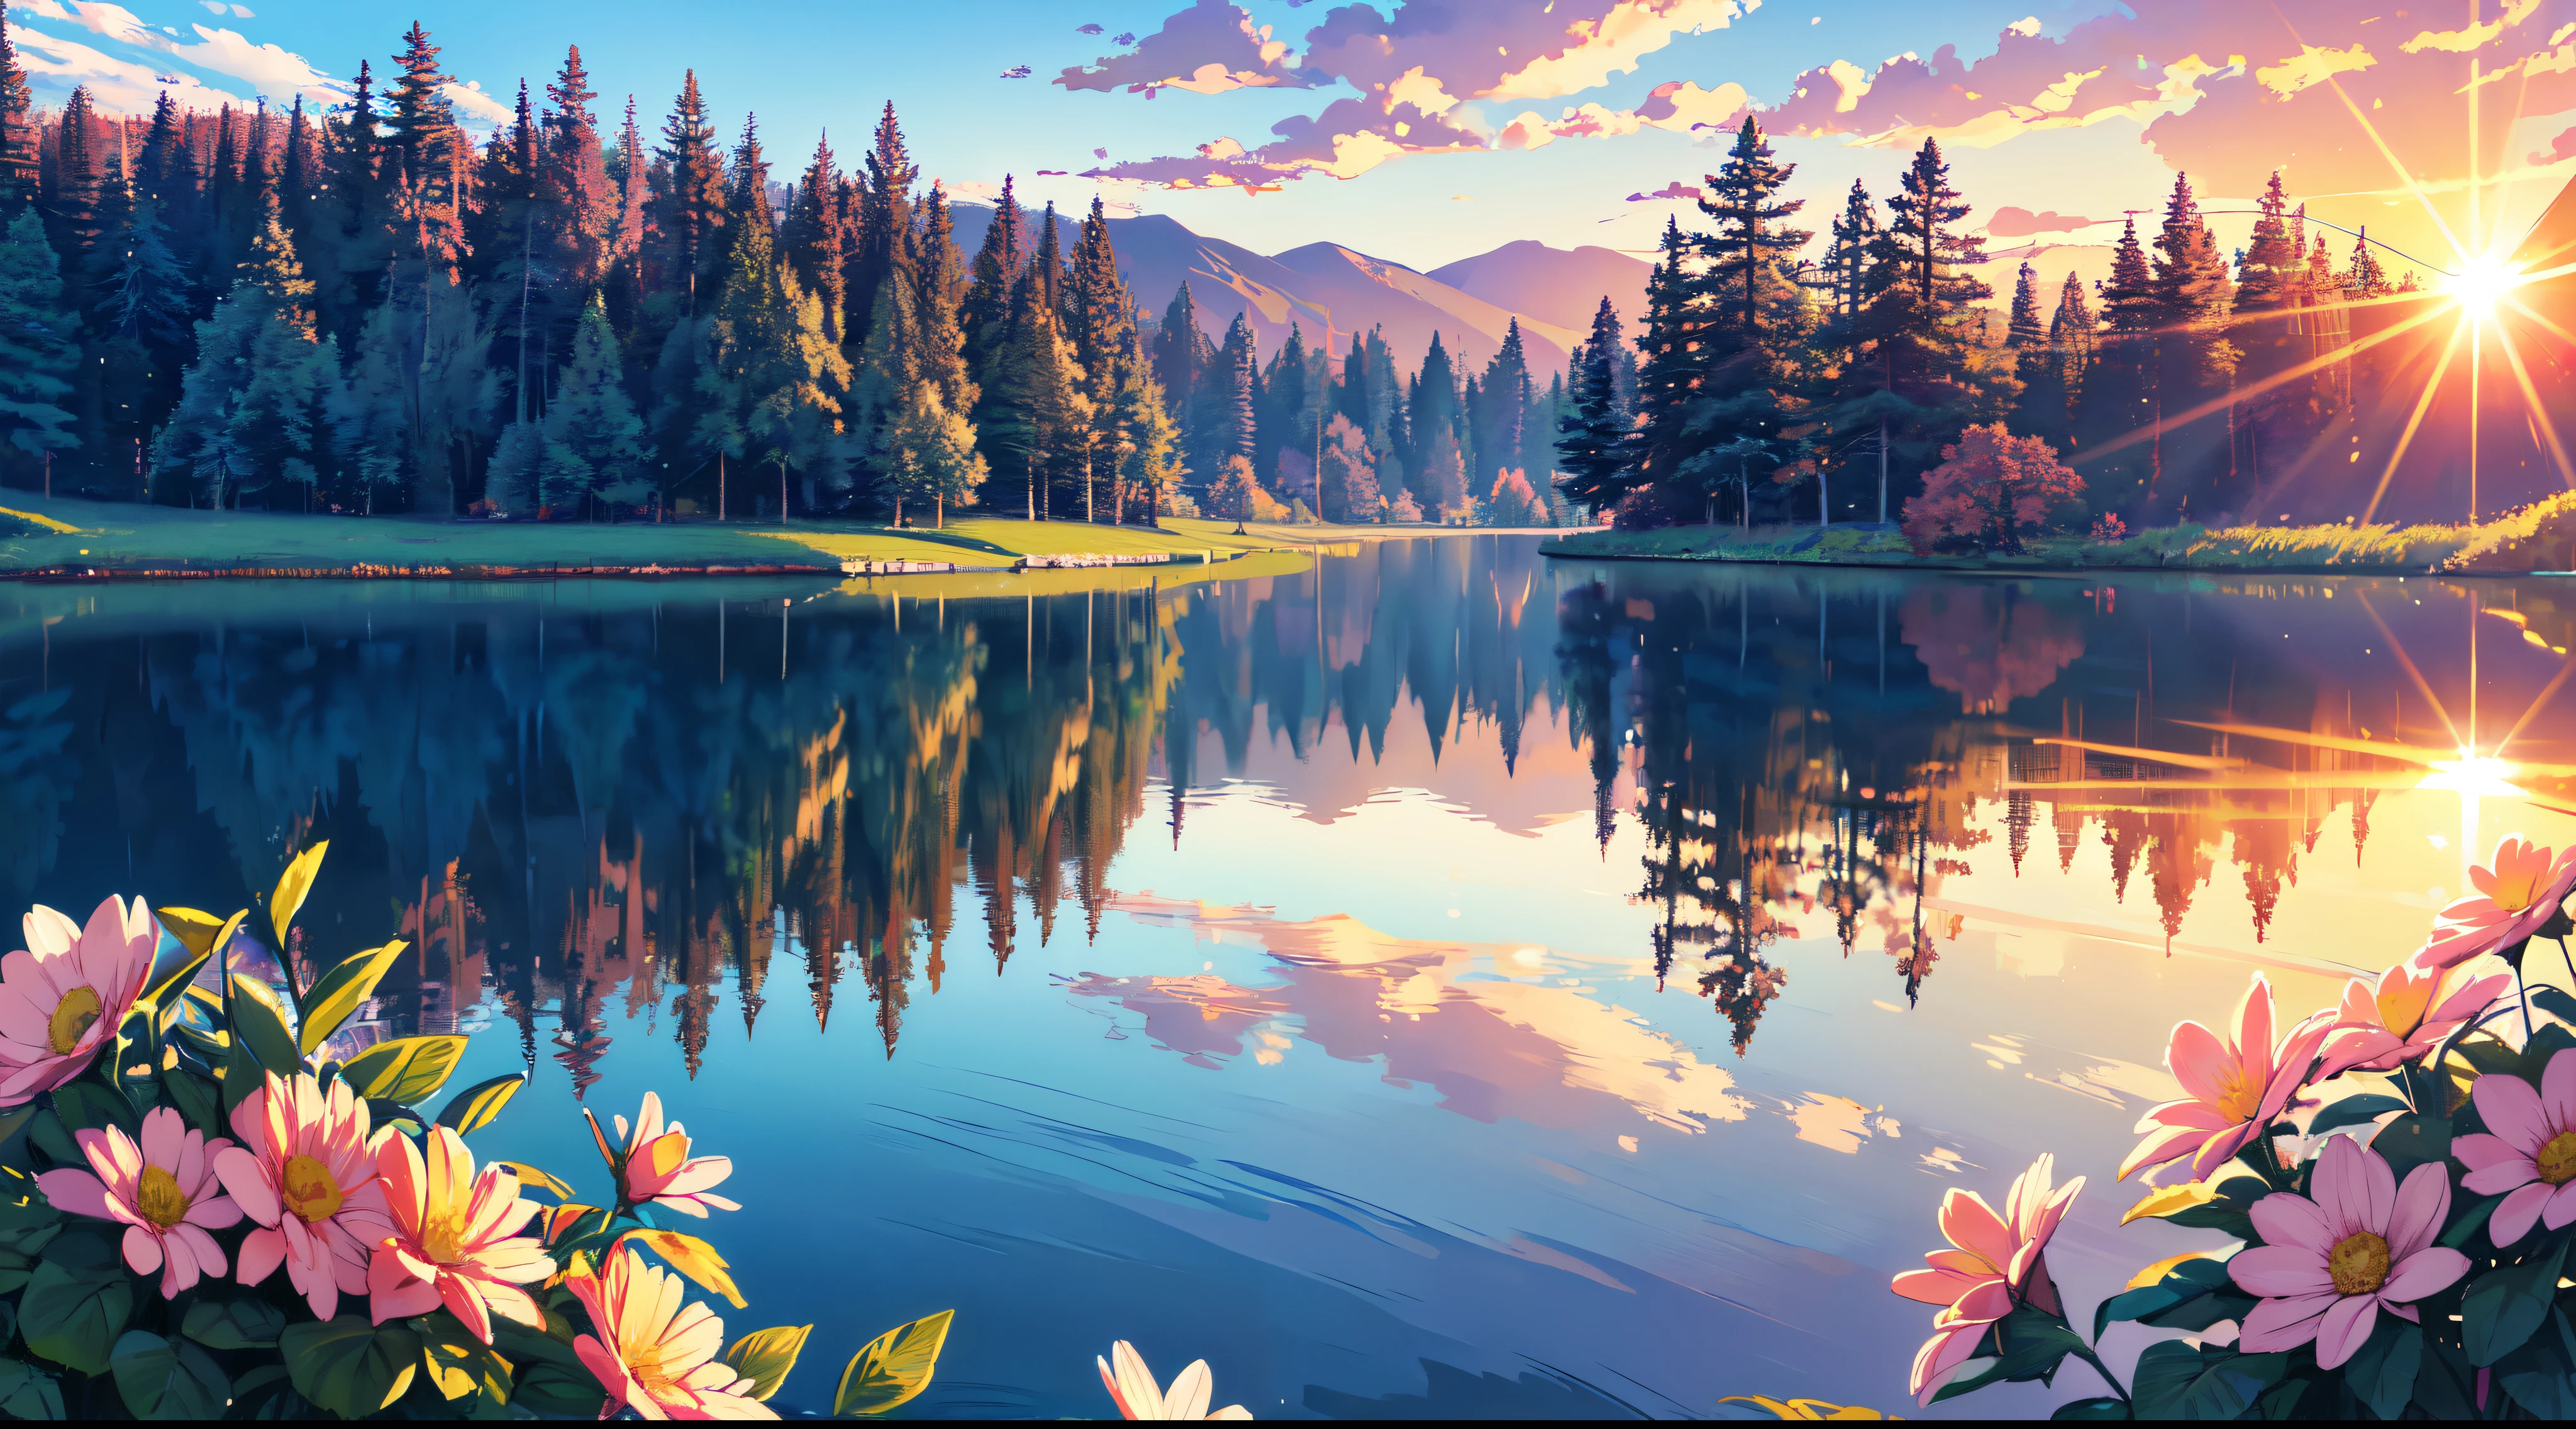 (melhor qualidade,4K,8K,alta resolução,obra de arte:1.2),ultra-detalhado,realista:1.37, Pequeno lago, Lindo pôr do sol, cores suaves, brilho do sol, flores, Lindas árvores